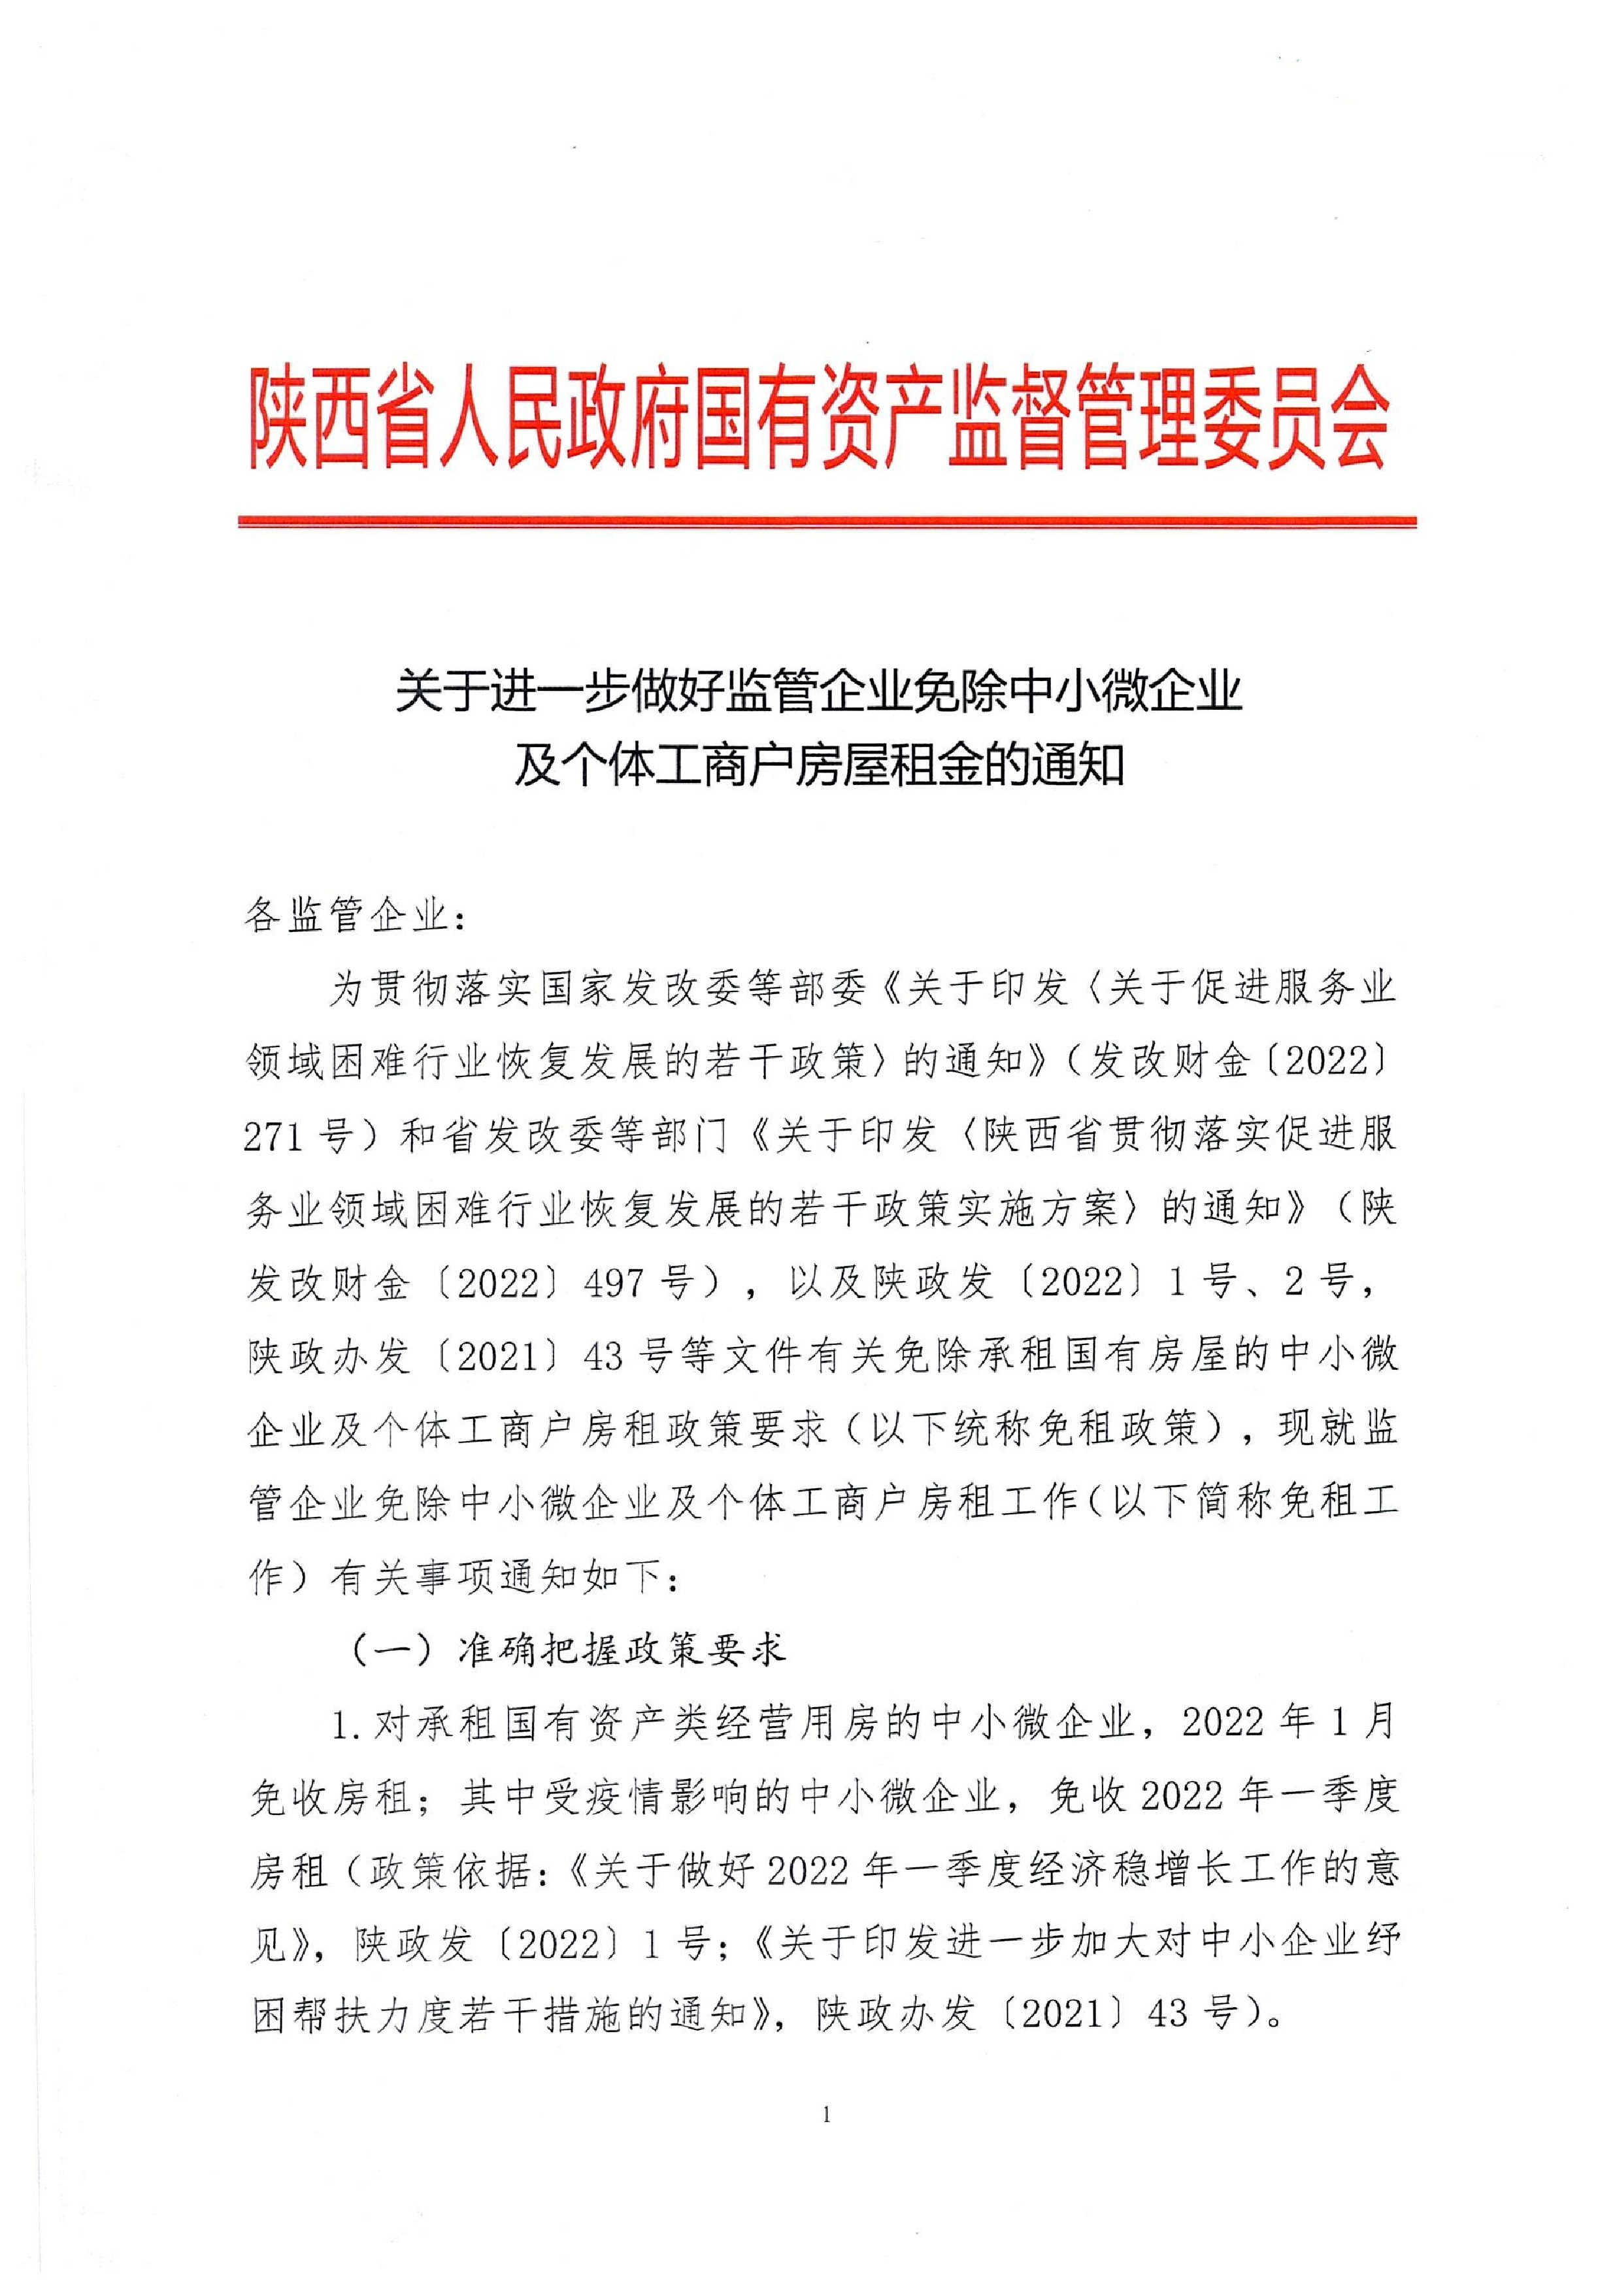 陕西省国资委关于进一步做好监管企业免除中小微企业及个体工商户房屋租金的通知